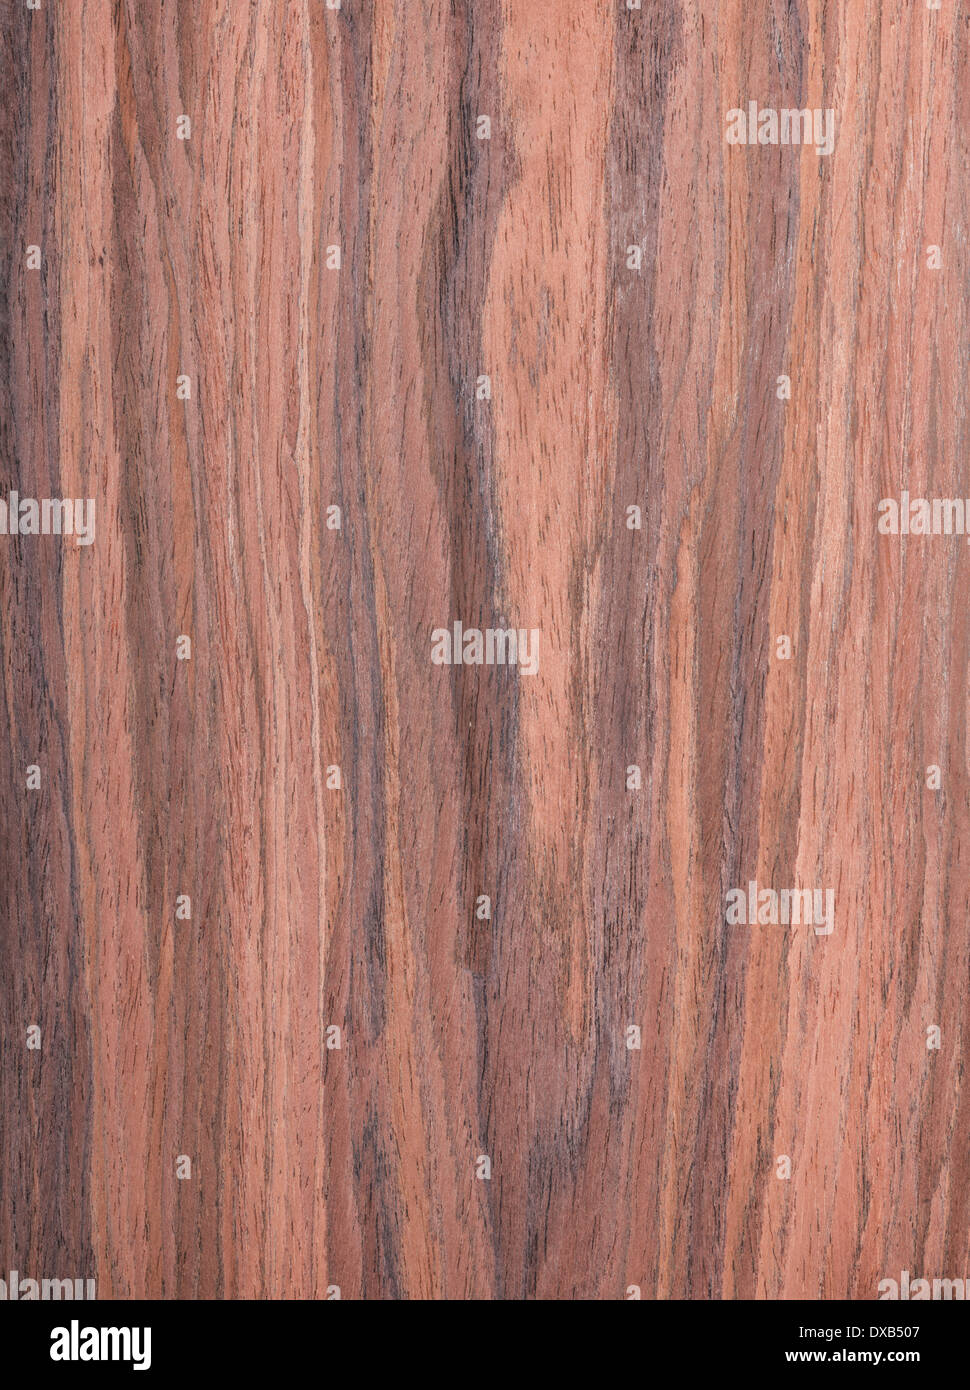 Nussbaum, Holz Maserung, Baum-Hintergrund Stockfoto